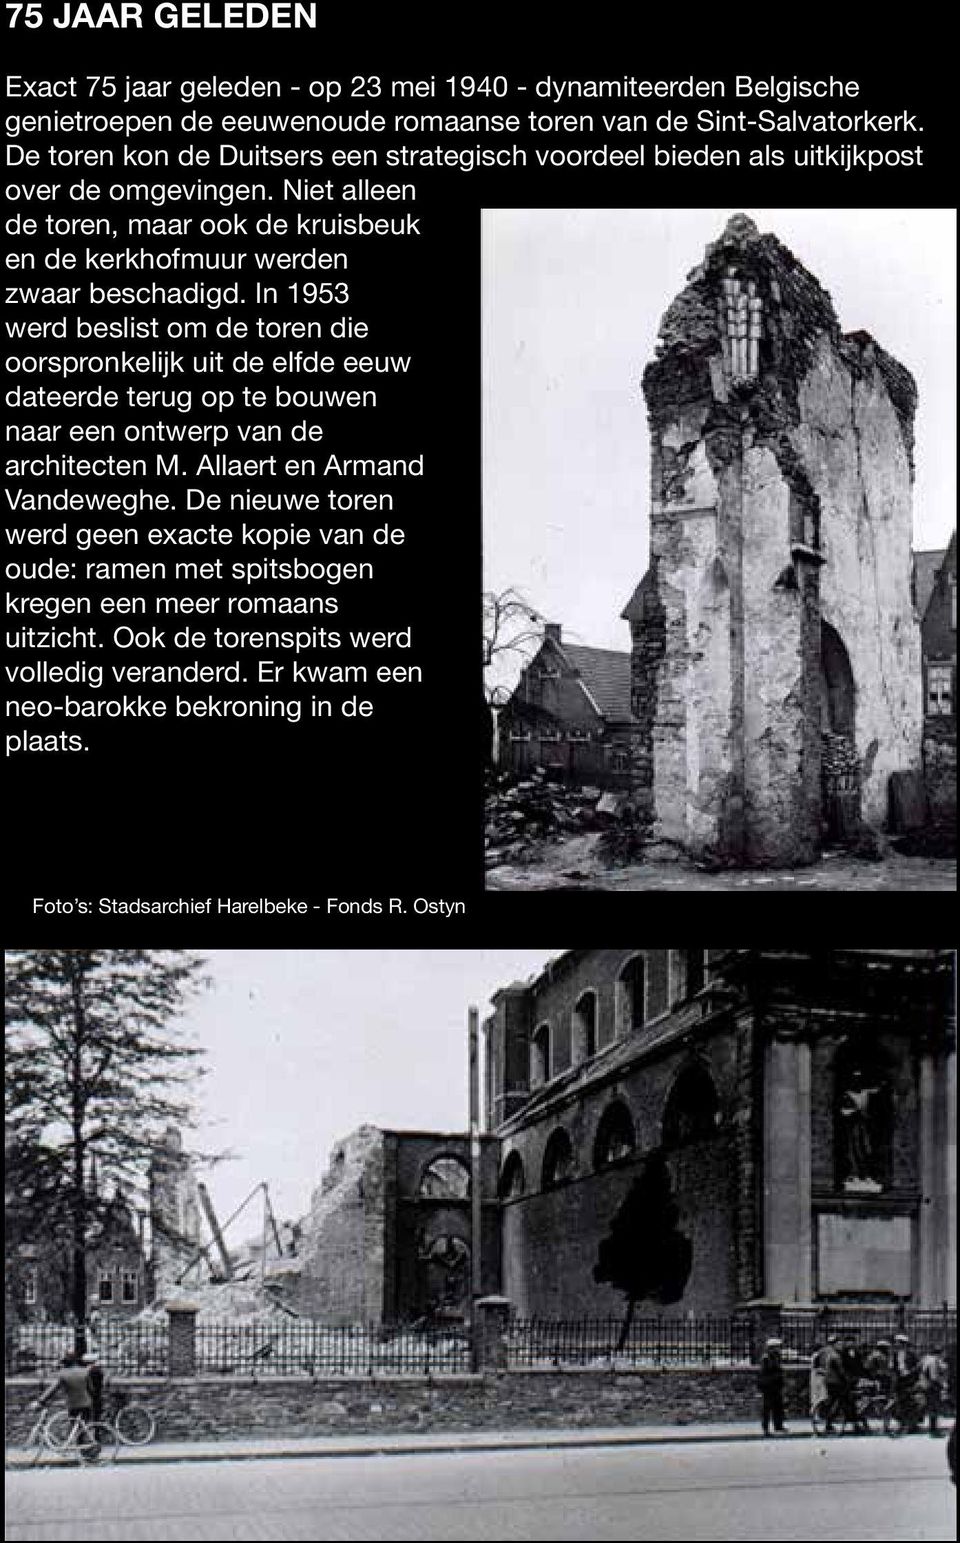 In 1953 werd beslist om de toren die oorspronkelijk uit de elfde eeuw dateerde terug op te bouwen naar een ontwerp van de architecten M. Allaert en Armand Vandeweghe.